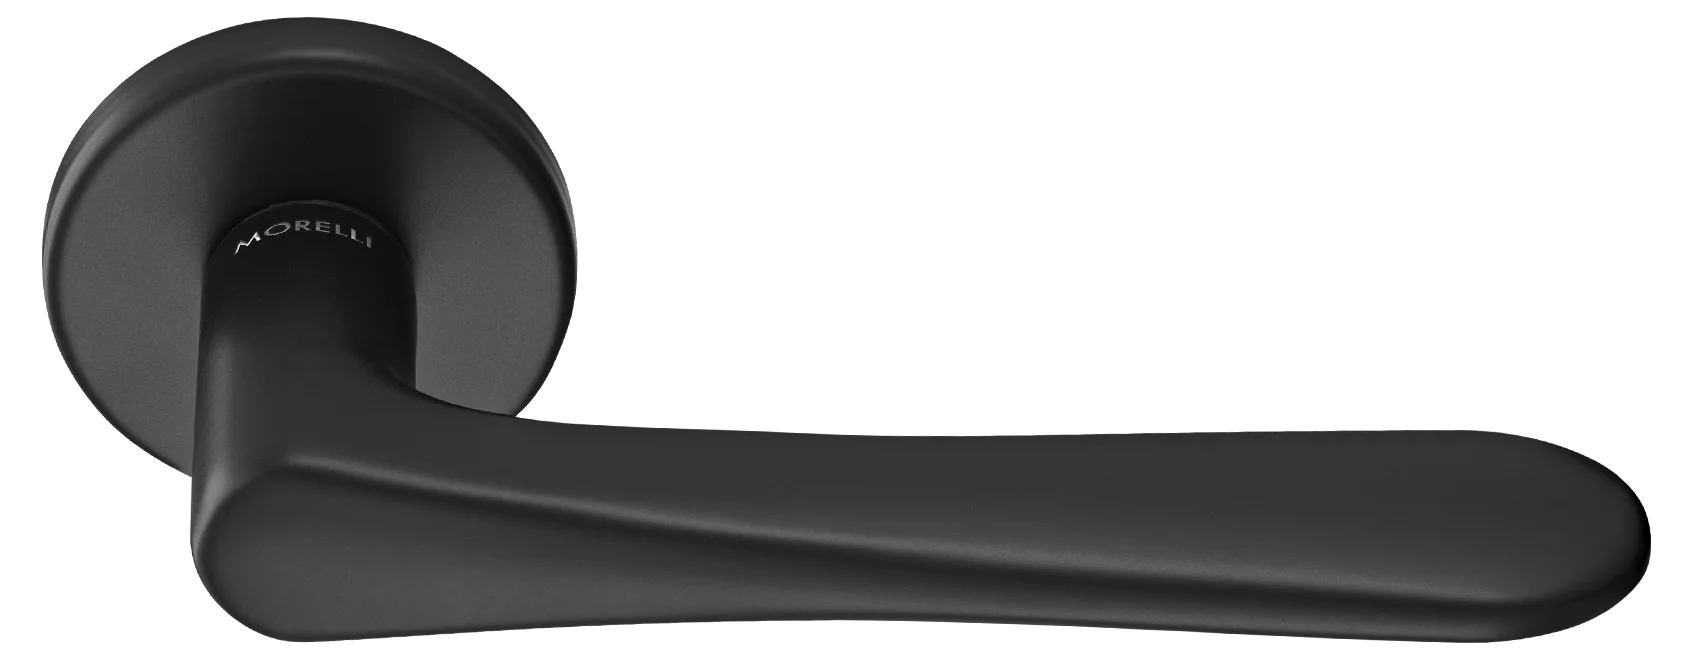 AULA R5 NERO, ручка дверная на розетке 7мм, цвет -  черный фото купить Уральск